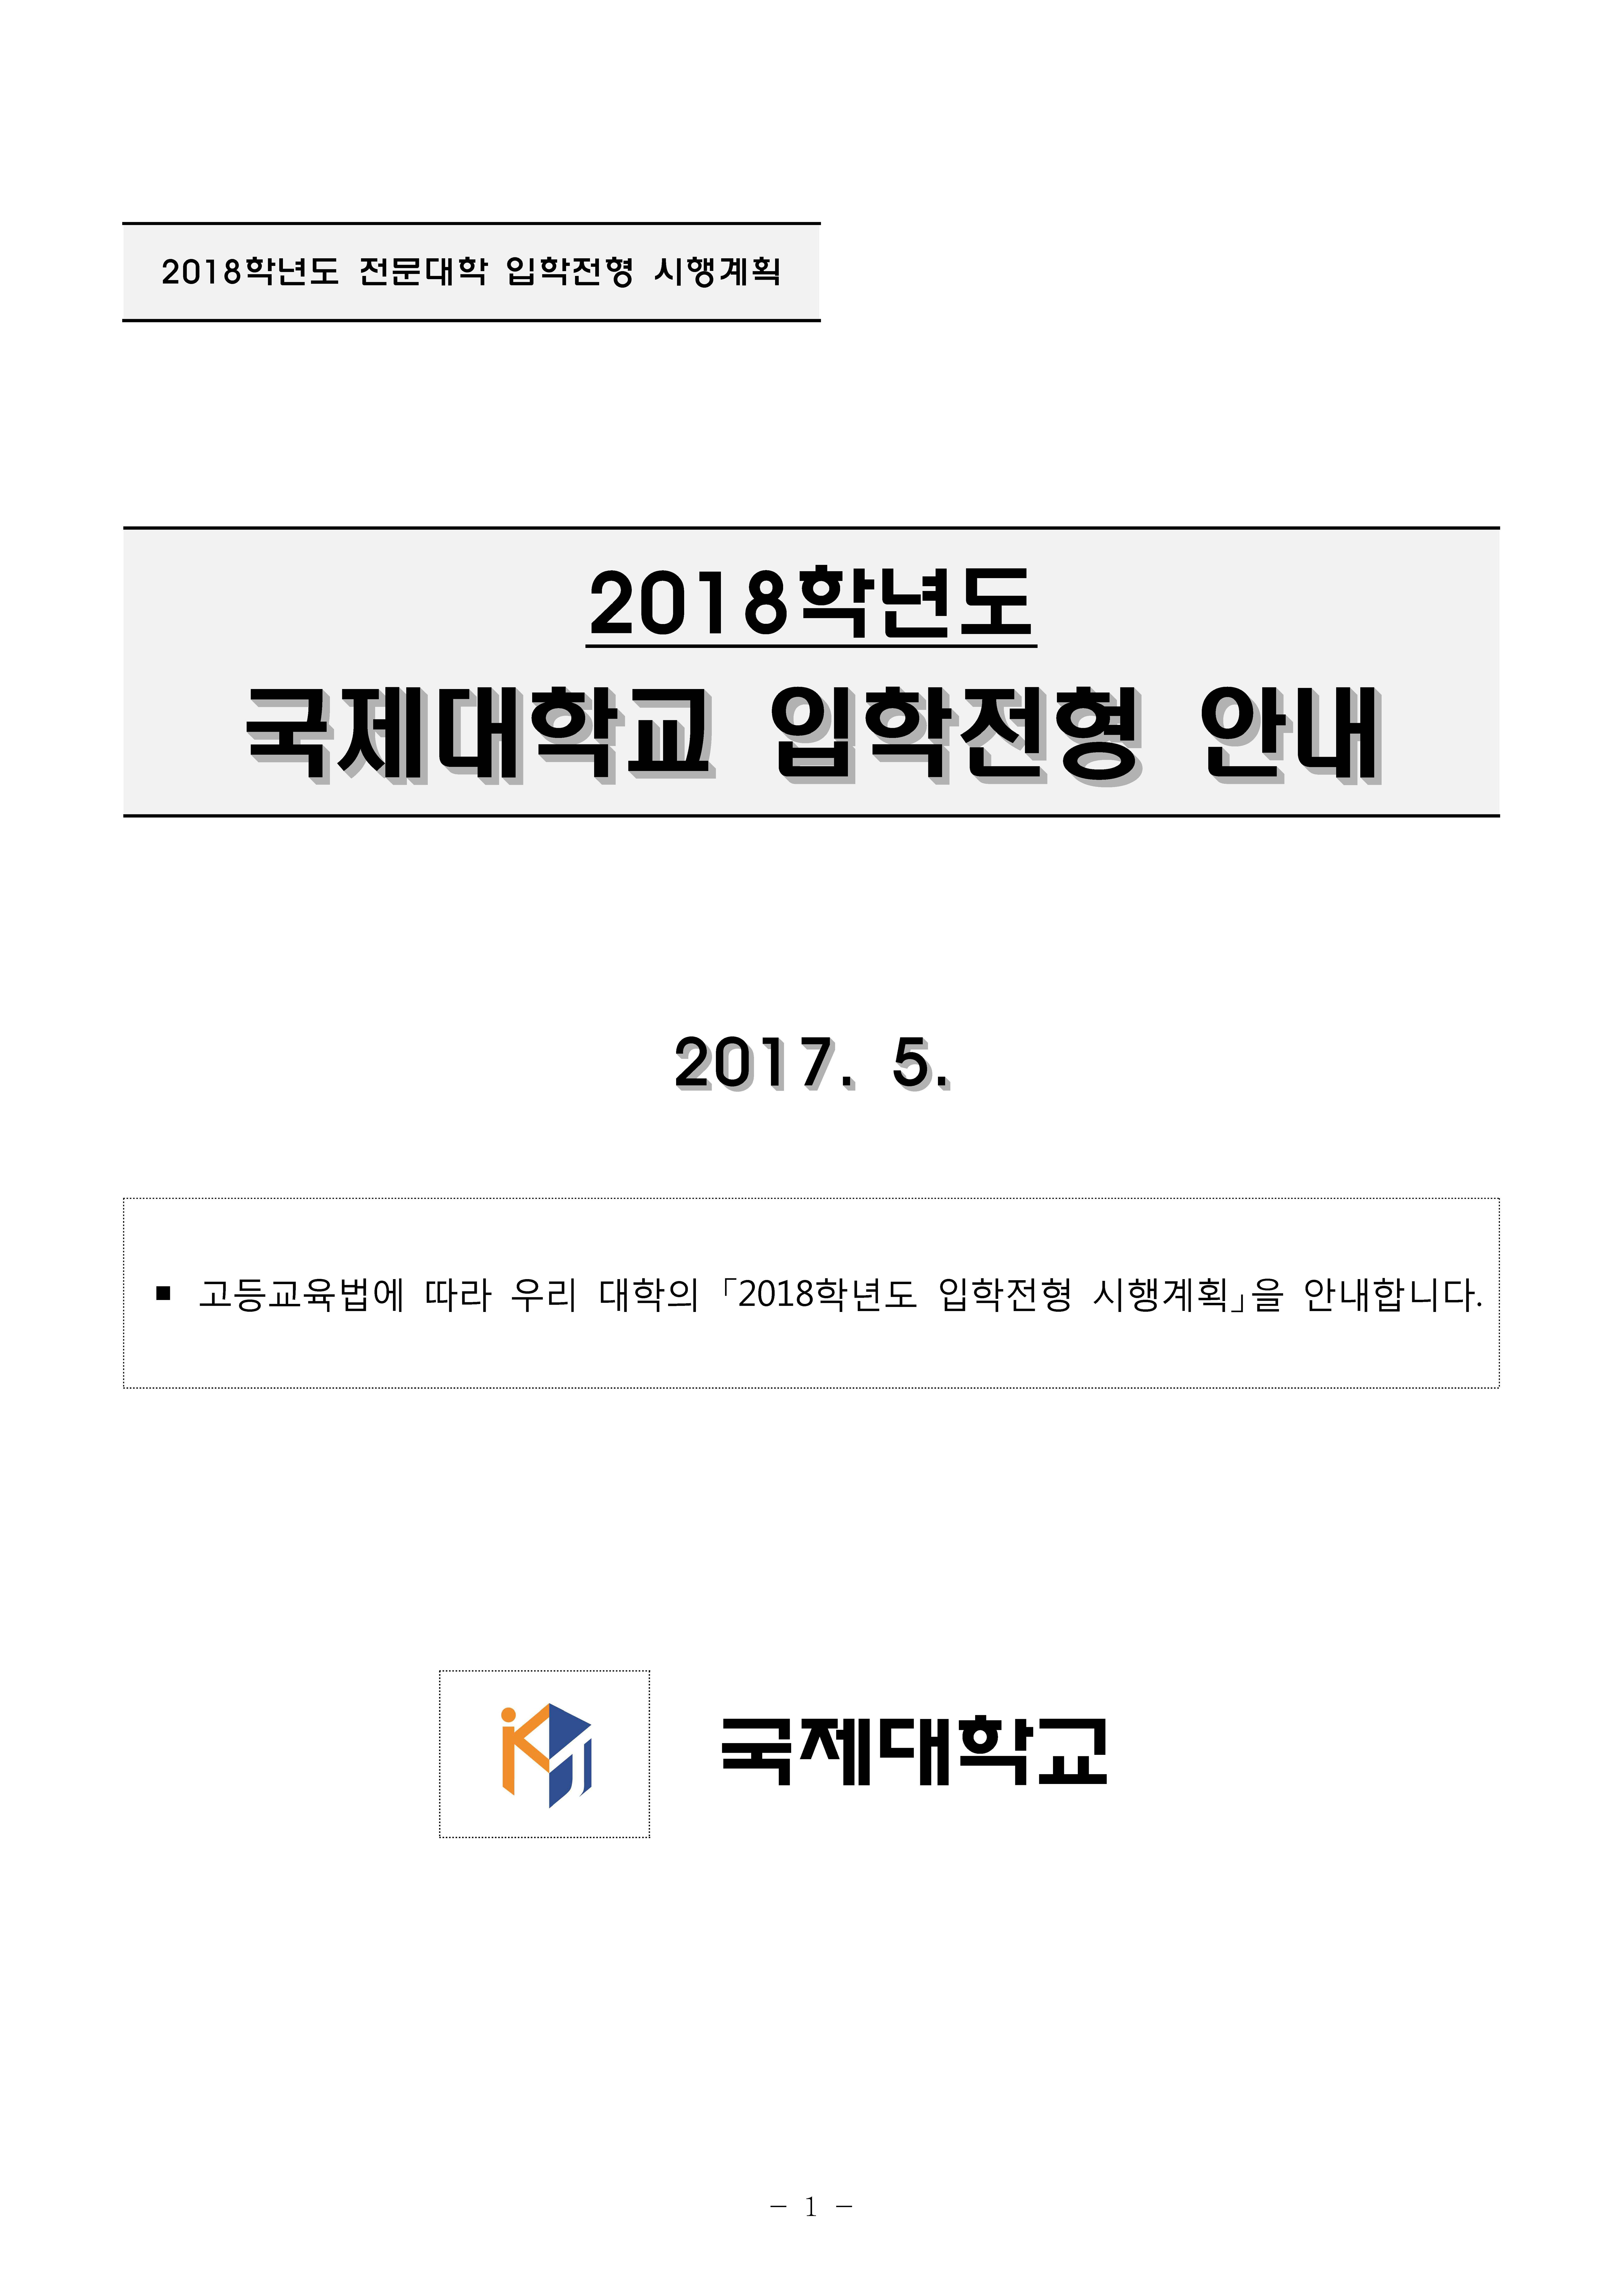 국제대학교 2018학년도 입학전형 시행계획_페이지_1.jpg